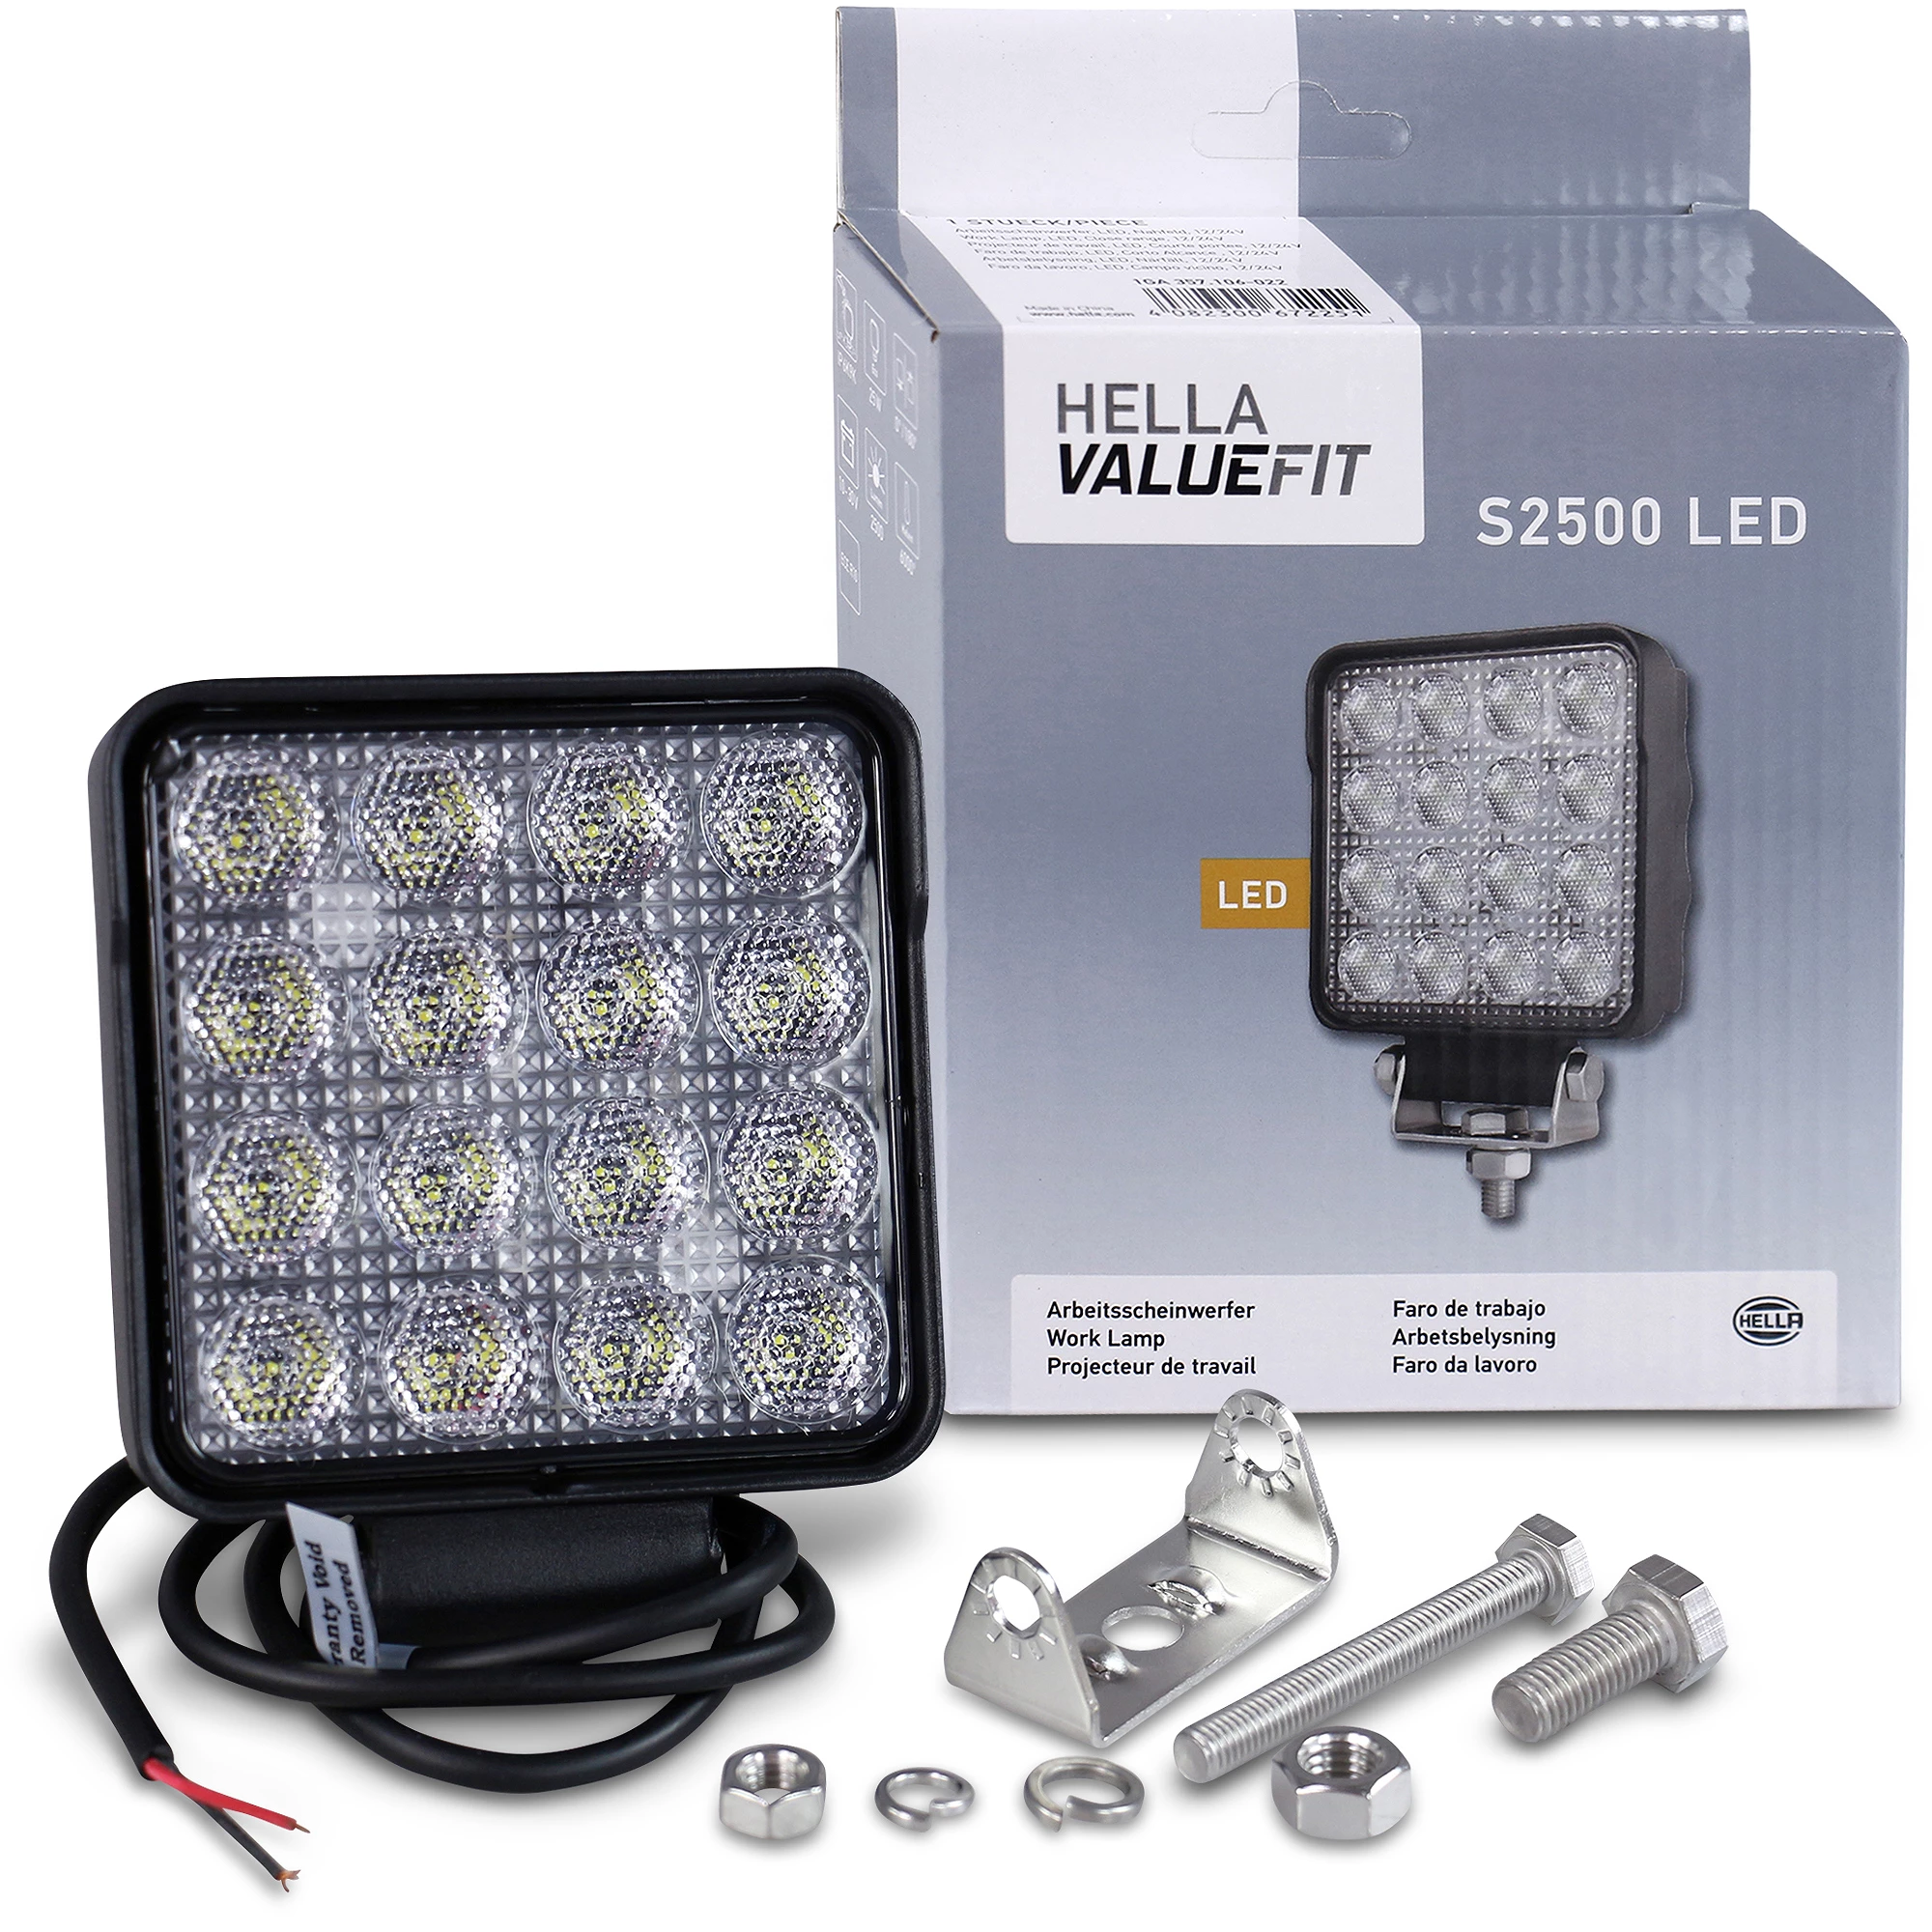 HELLA LED-Arbeitsscheinwerfer - Valuefit S2500 - 24/12V 1GA357106-022  günstig online kaufen